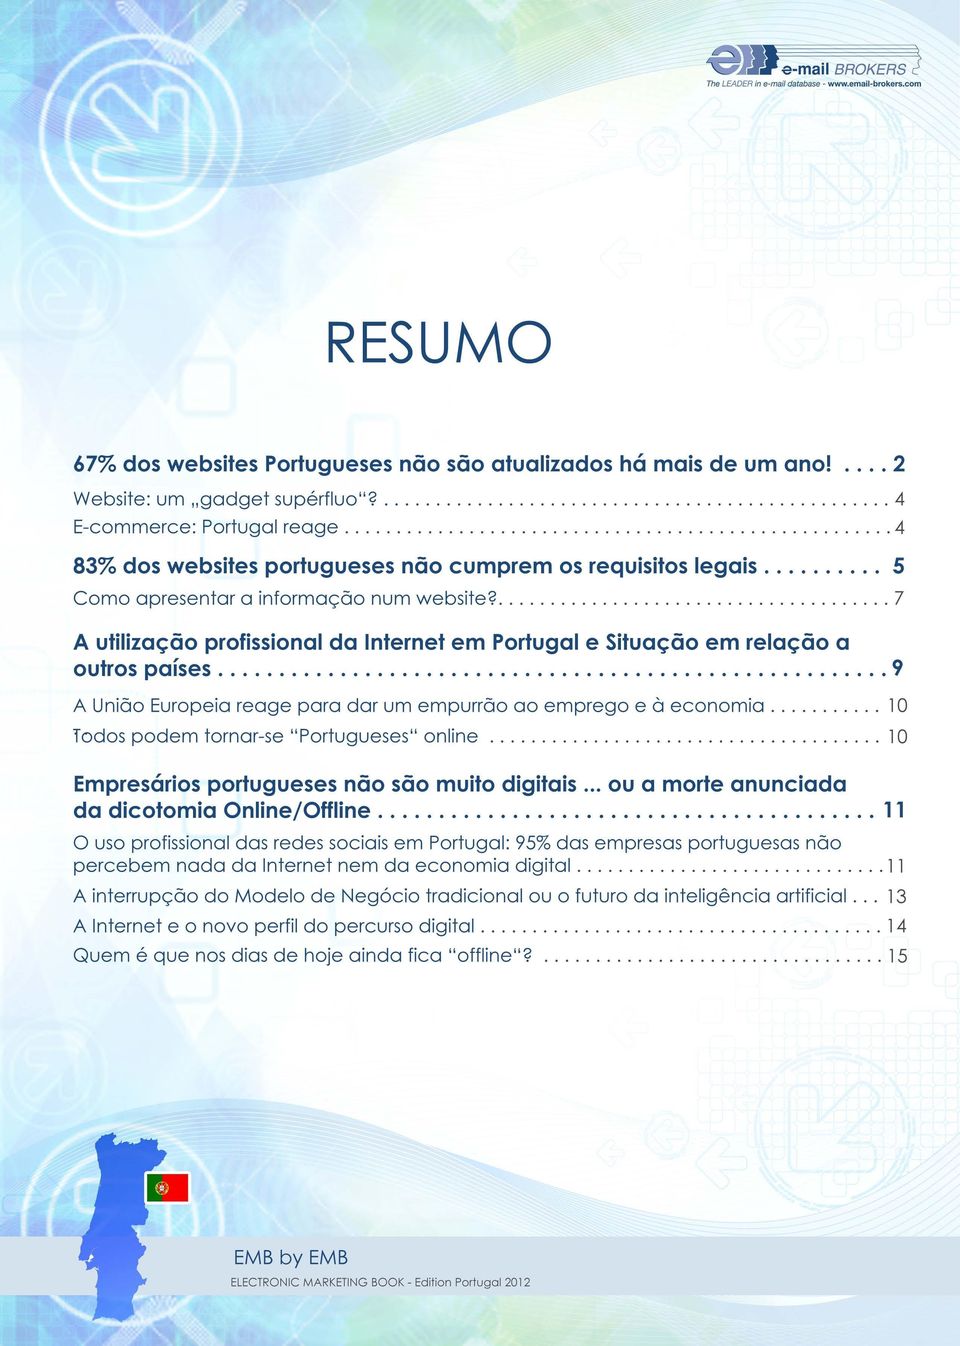 7 A utilização profissional da Internet em Portugal e Situação em relação a outros países 9 A União Europeia reage para dar um empurrão ao emprego e à economia 10 Todos podem tornar-se "Portugueses"